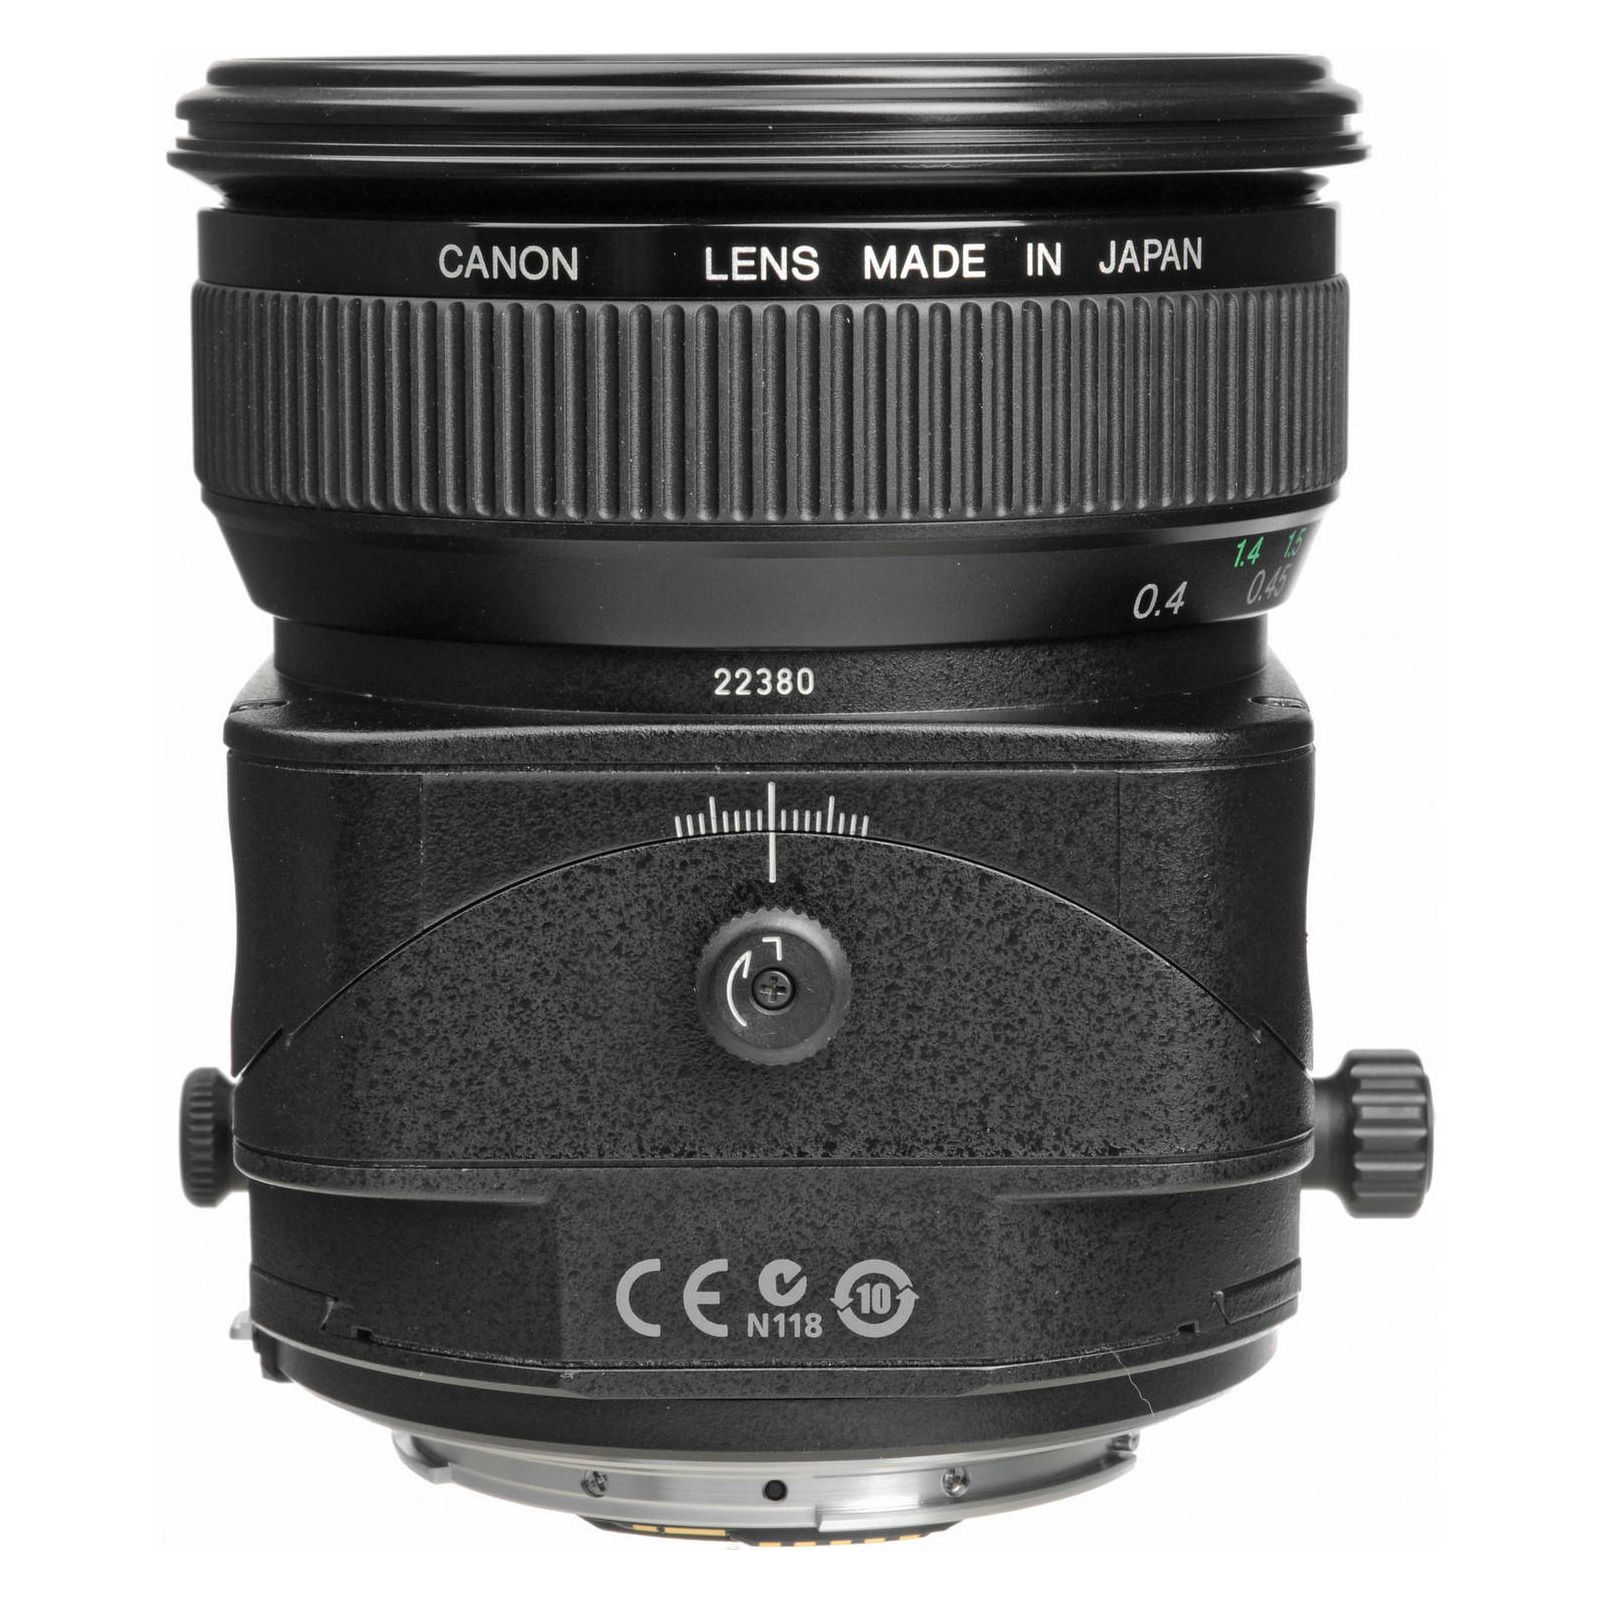 Canon TS-E 45mm f/2.8 tilt shift objektiv lens TS 45 2.8 1:2,8 (2536A019AA)